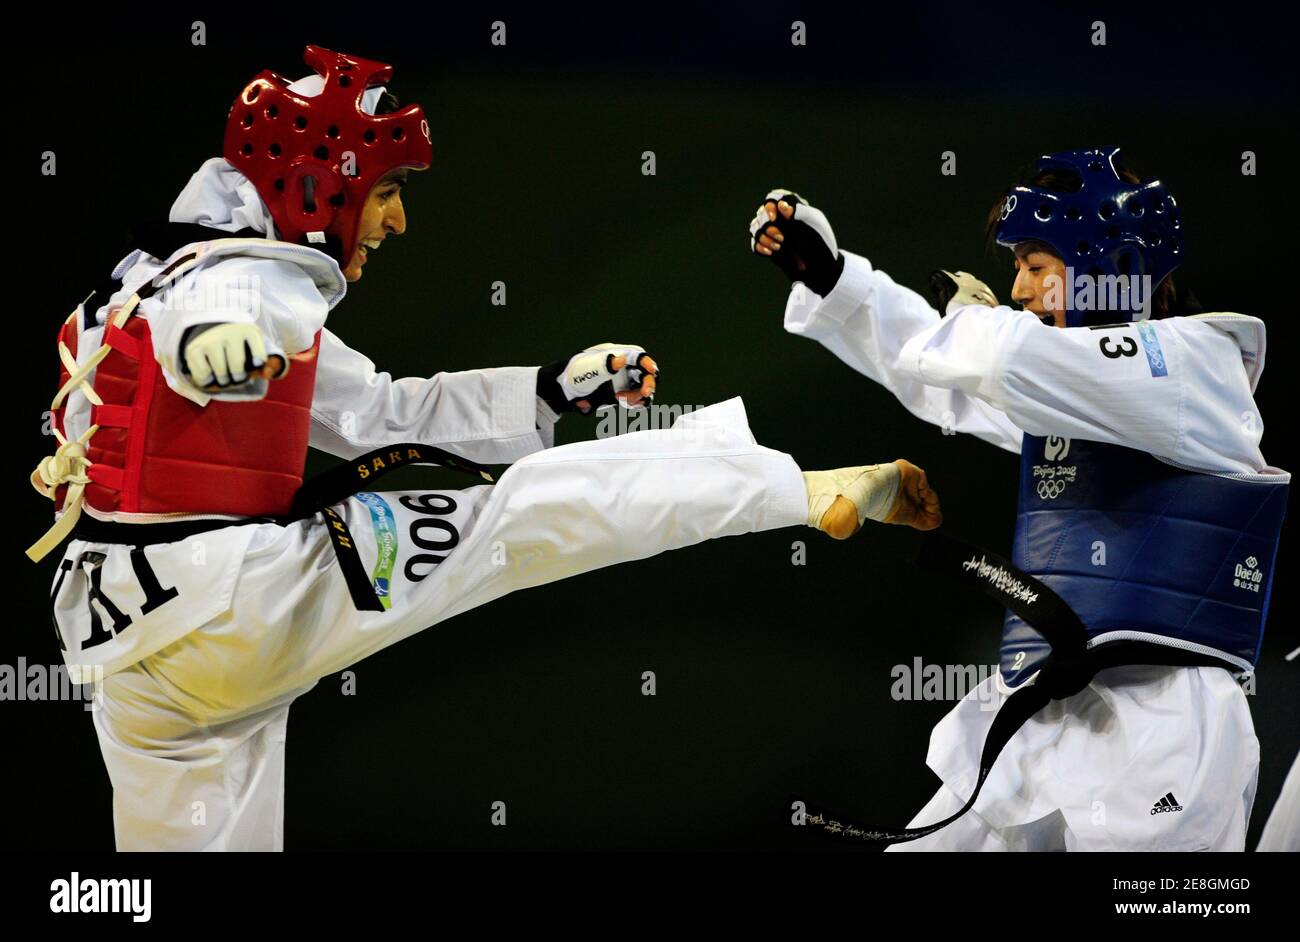 Yang Shu-Chun (blau) von Taiwan kämpft Sara Chosch Jamal der Iran während der Frauen bis 49 kg Taekwando Wettbewerb bei den Olympischen Spielen 2008 in Peking 20. August 2008.     REUTERS/Desmond Boylan (CHINA) Stockfoto